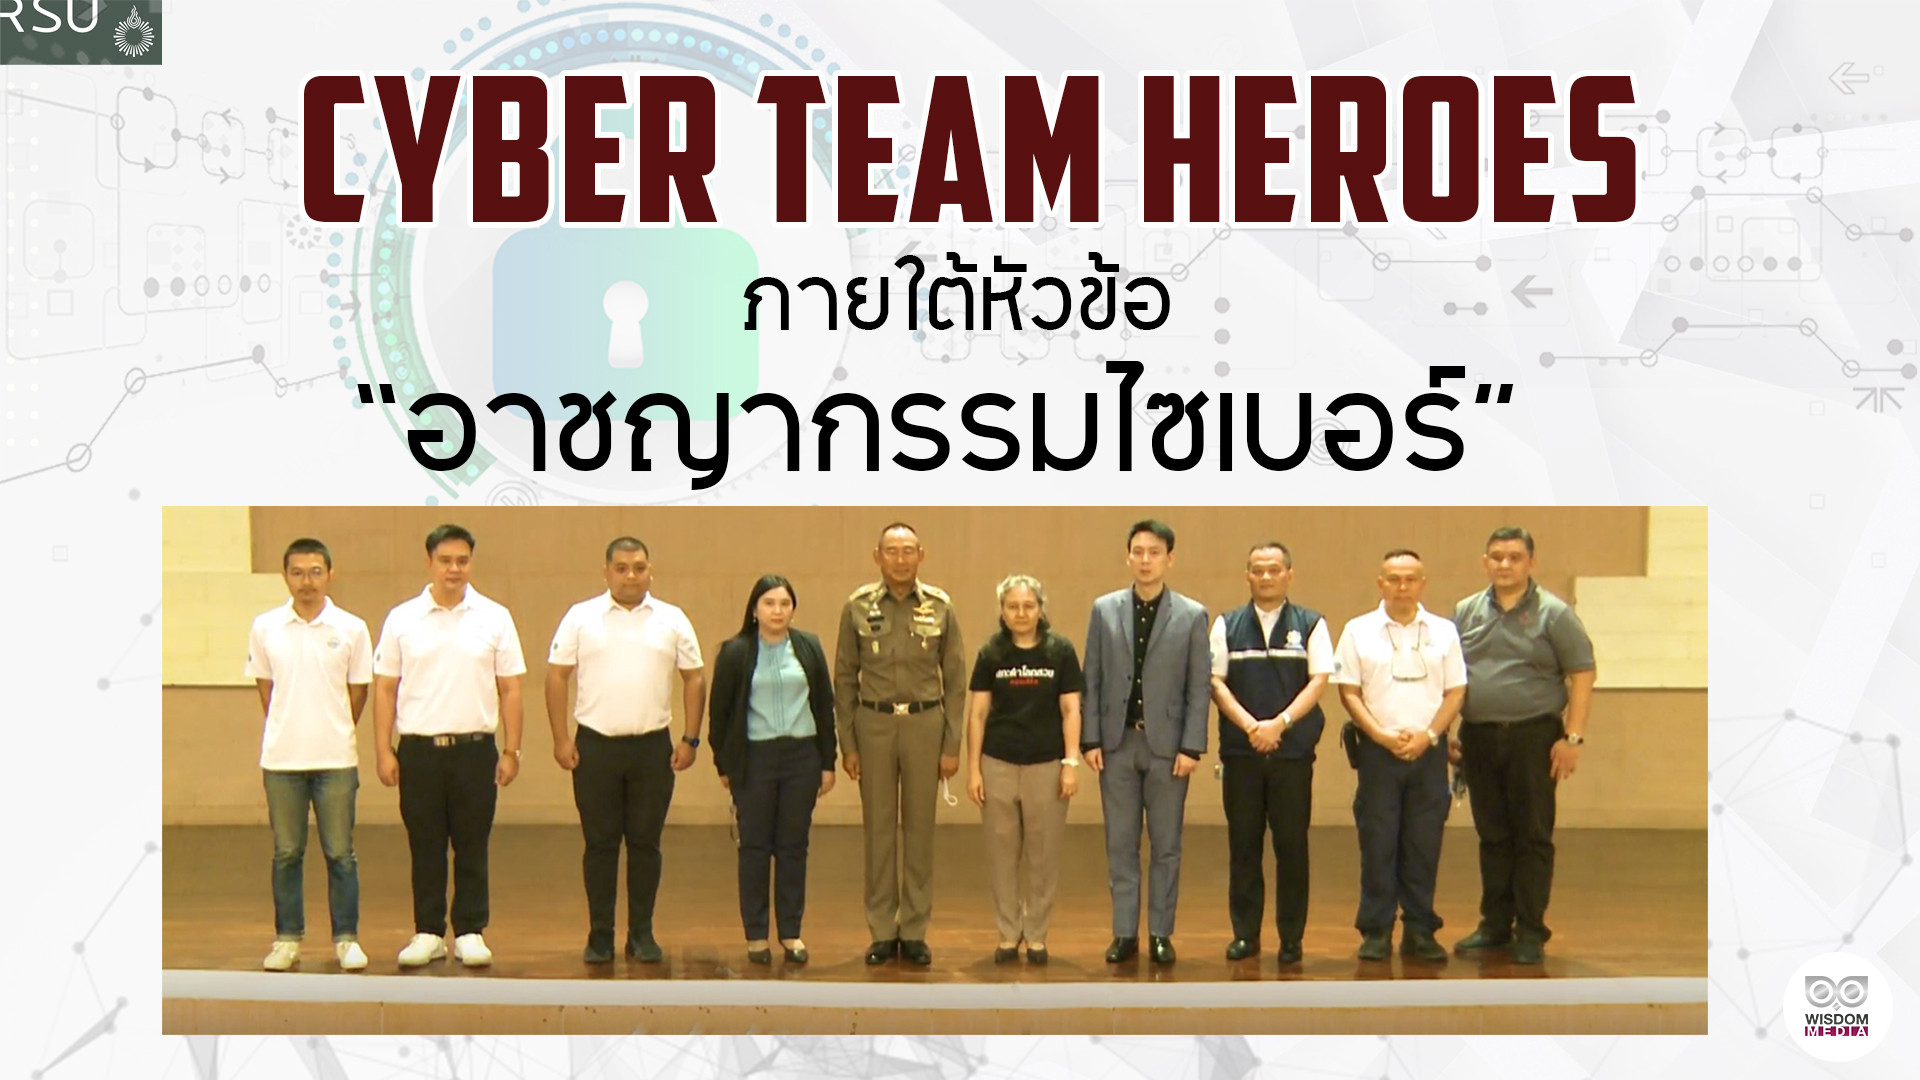 Cyber Team Heroes ภายใต้หัวข้อ “อาชญากรรมไซเบอร์”